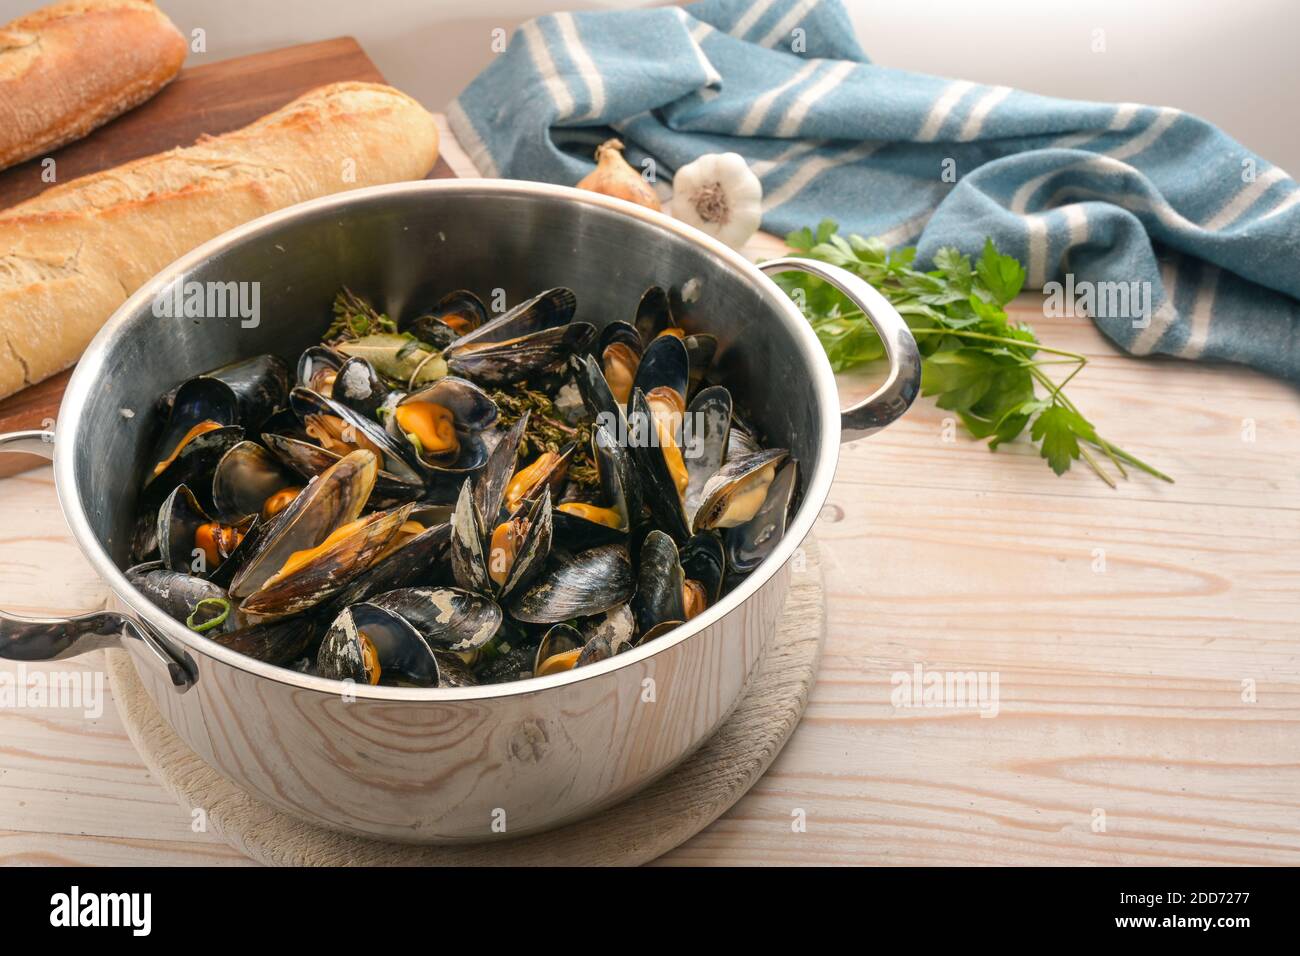 Moules fraîchement cuites dans une casserole, pain, herbes et une serviette bleue sur une table de cuisine en bois, repas de fruits de mer sains, espace de copie, foyer sélectionné, étroite dep Banque D'Images